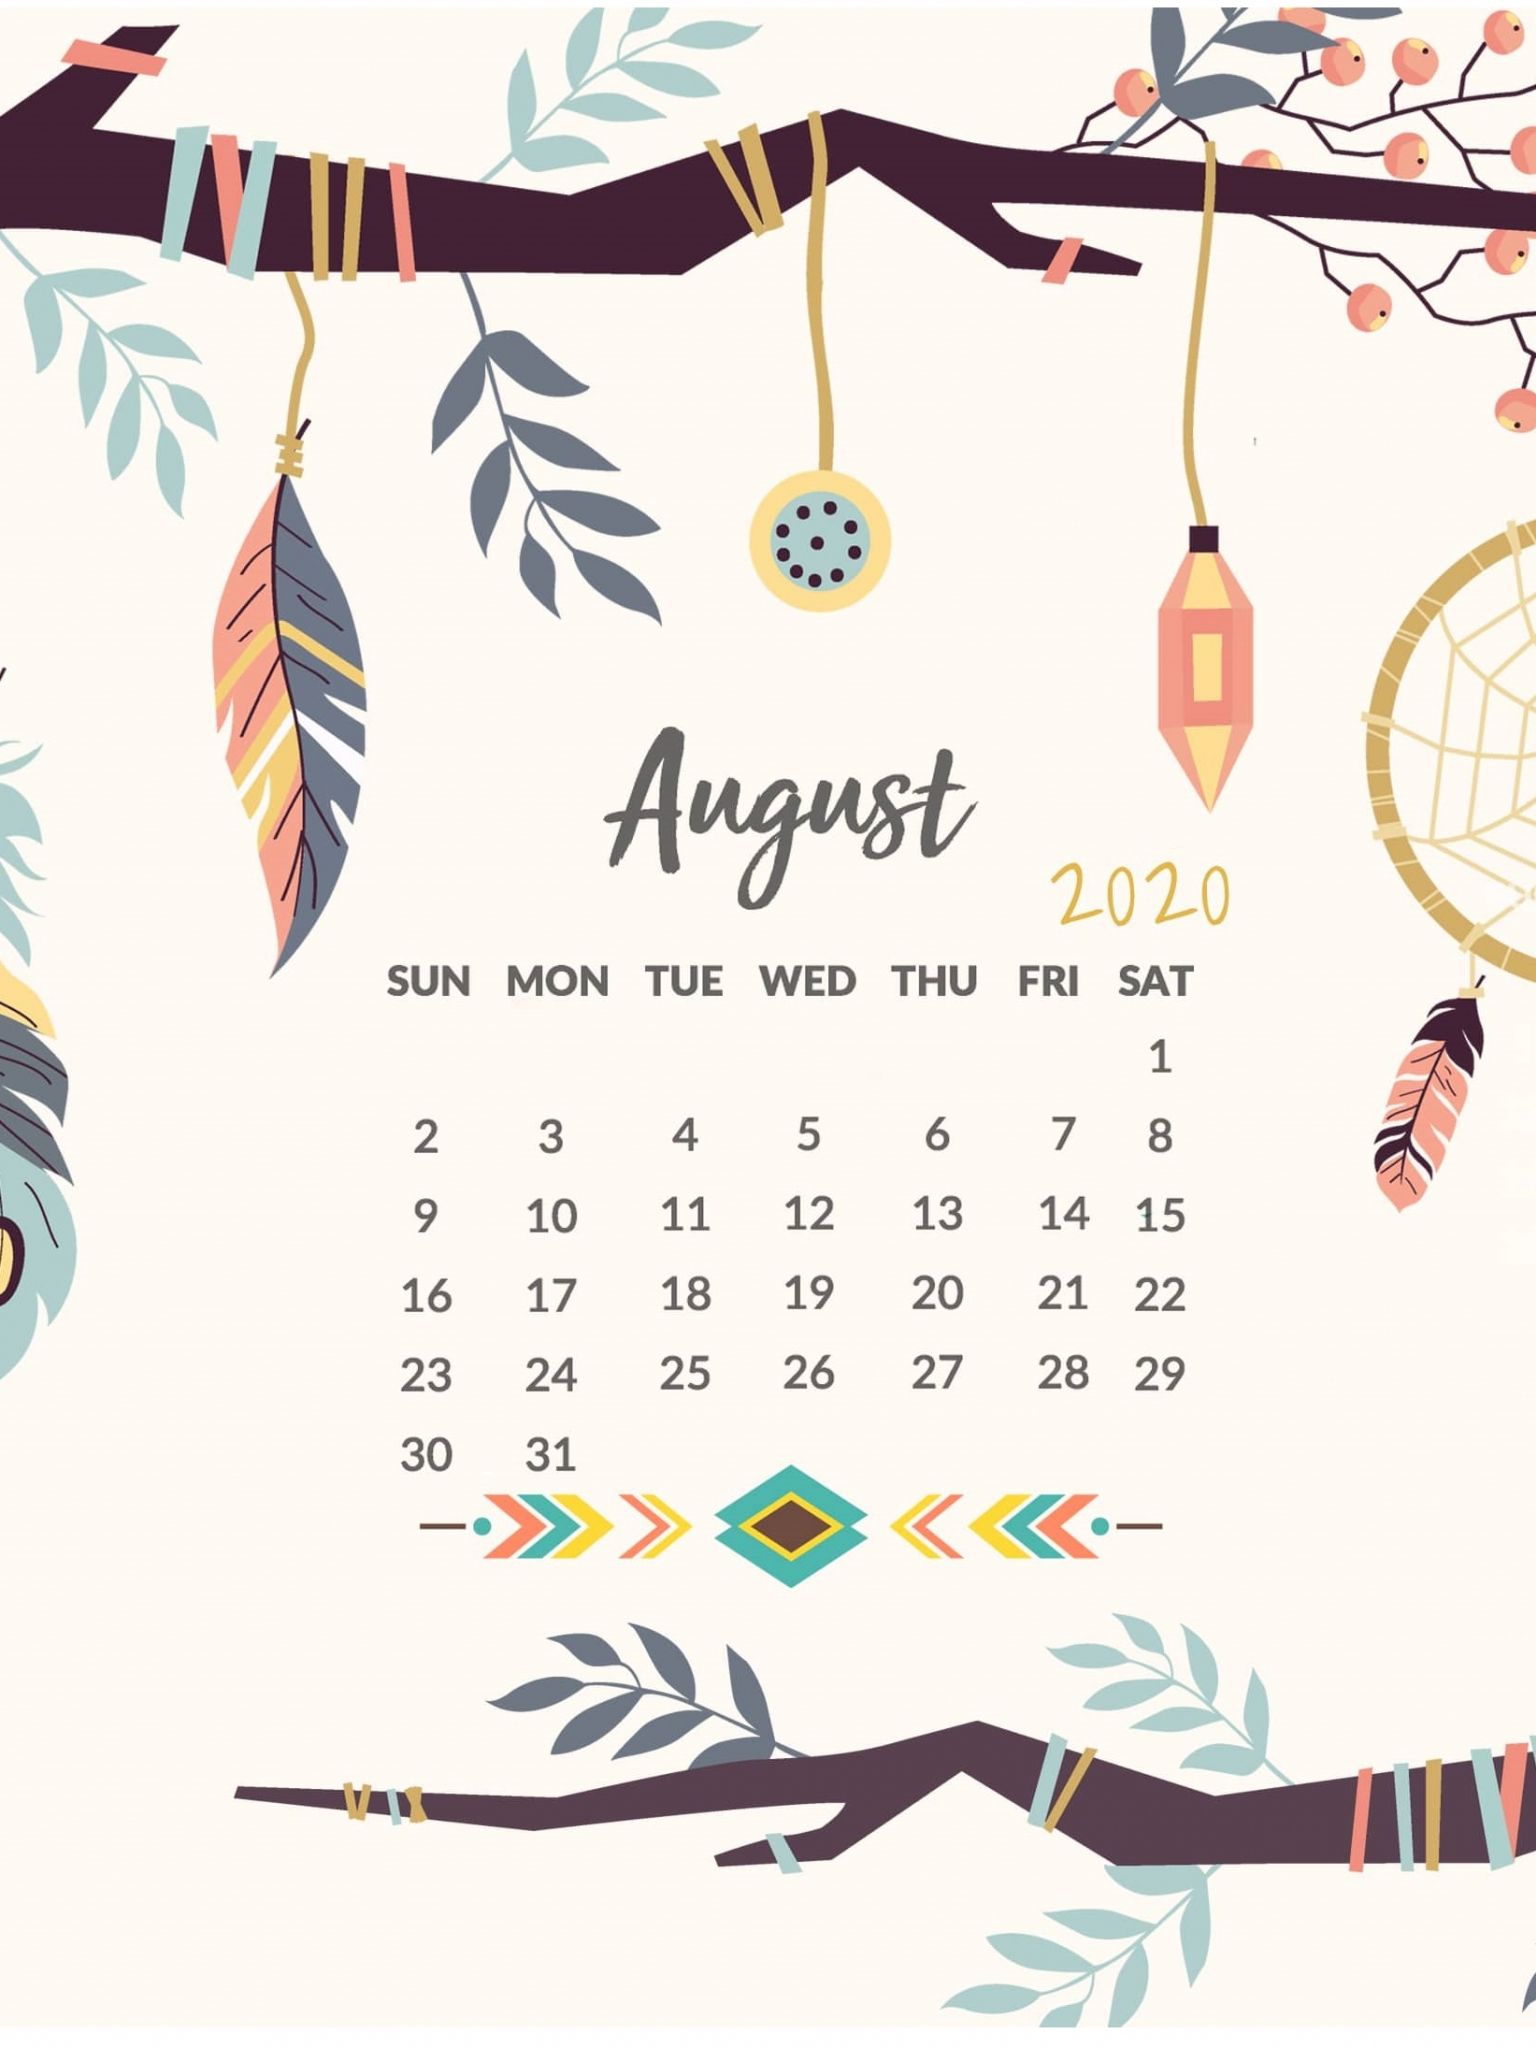 Free download August 2020 Calendar Wallpaper for iPhone Calendar